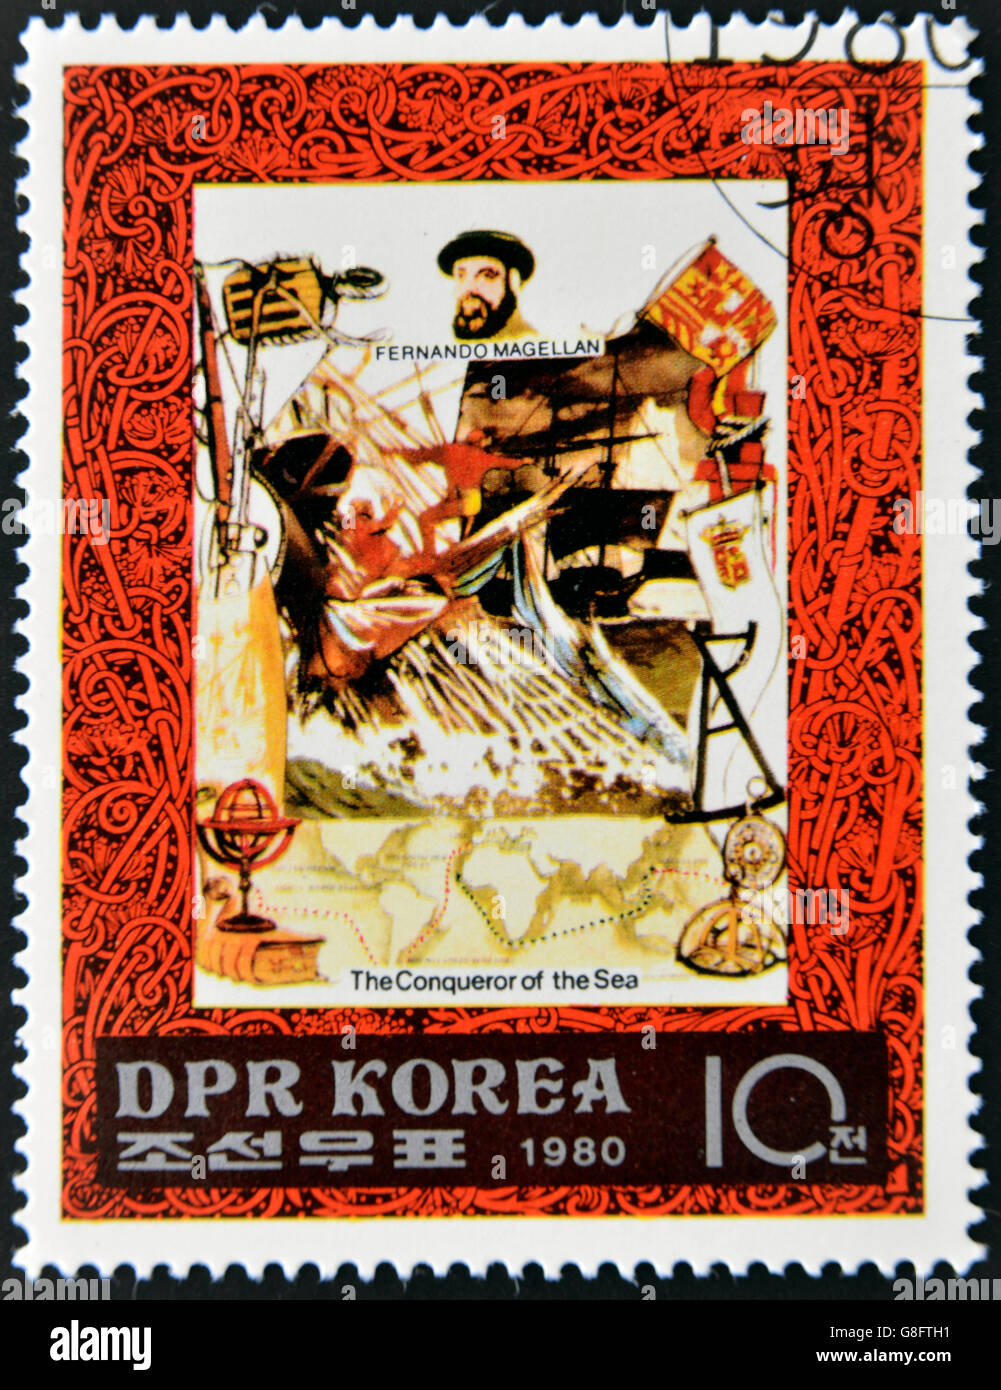 République populaire démocratique de Corée (RPD) - vers 1980 : un timbre imprimé en Corée du Nord, l'un montre Fernando Magellan de timbres Banque D'Images